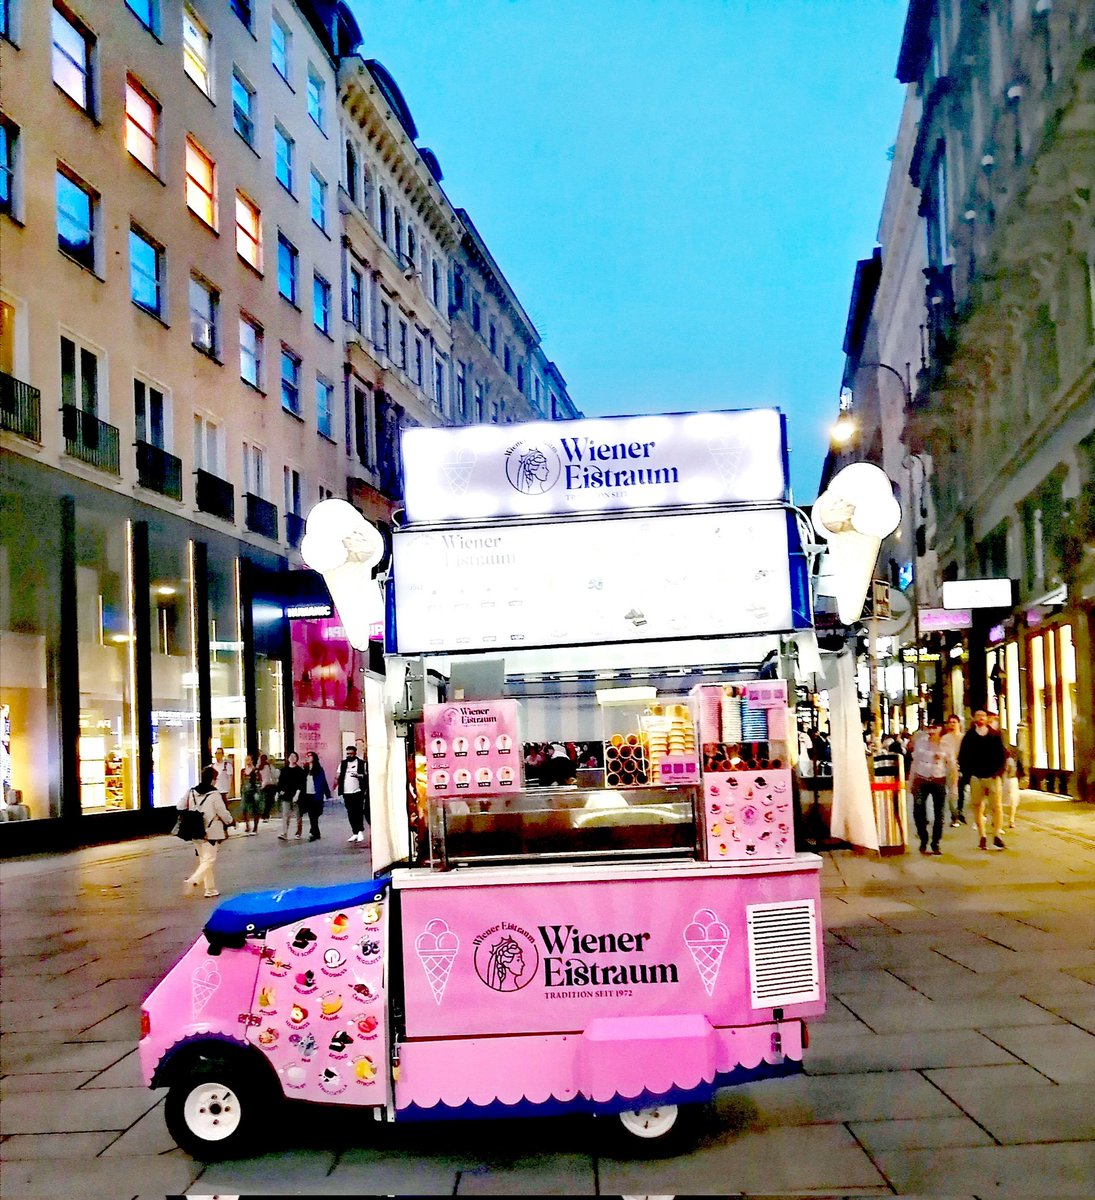 'Wiener Eistraum' im April 😂🍦
Good evening from Vienna 🌟🇦🇹
#Vienna #wienliebe #city #CityLife #nightlife #icecream